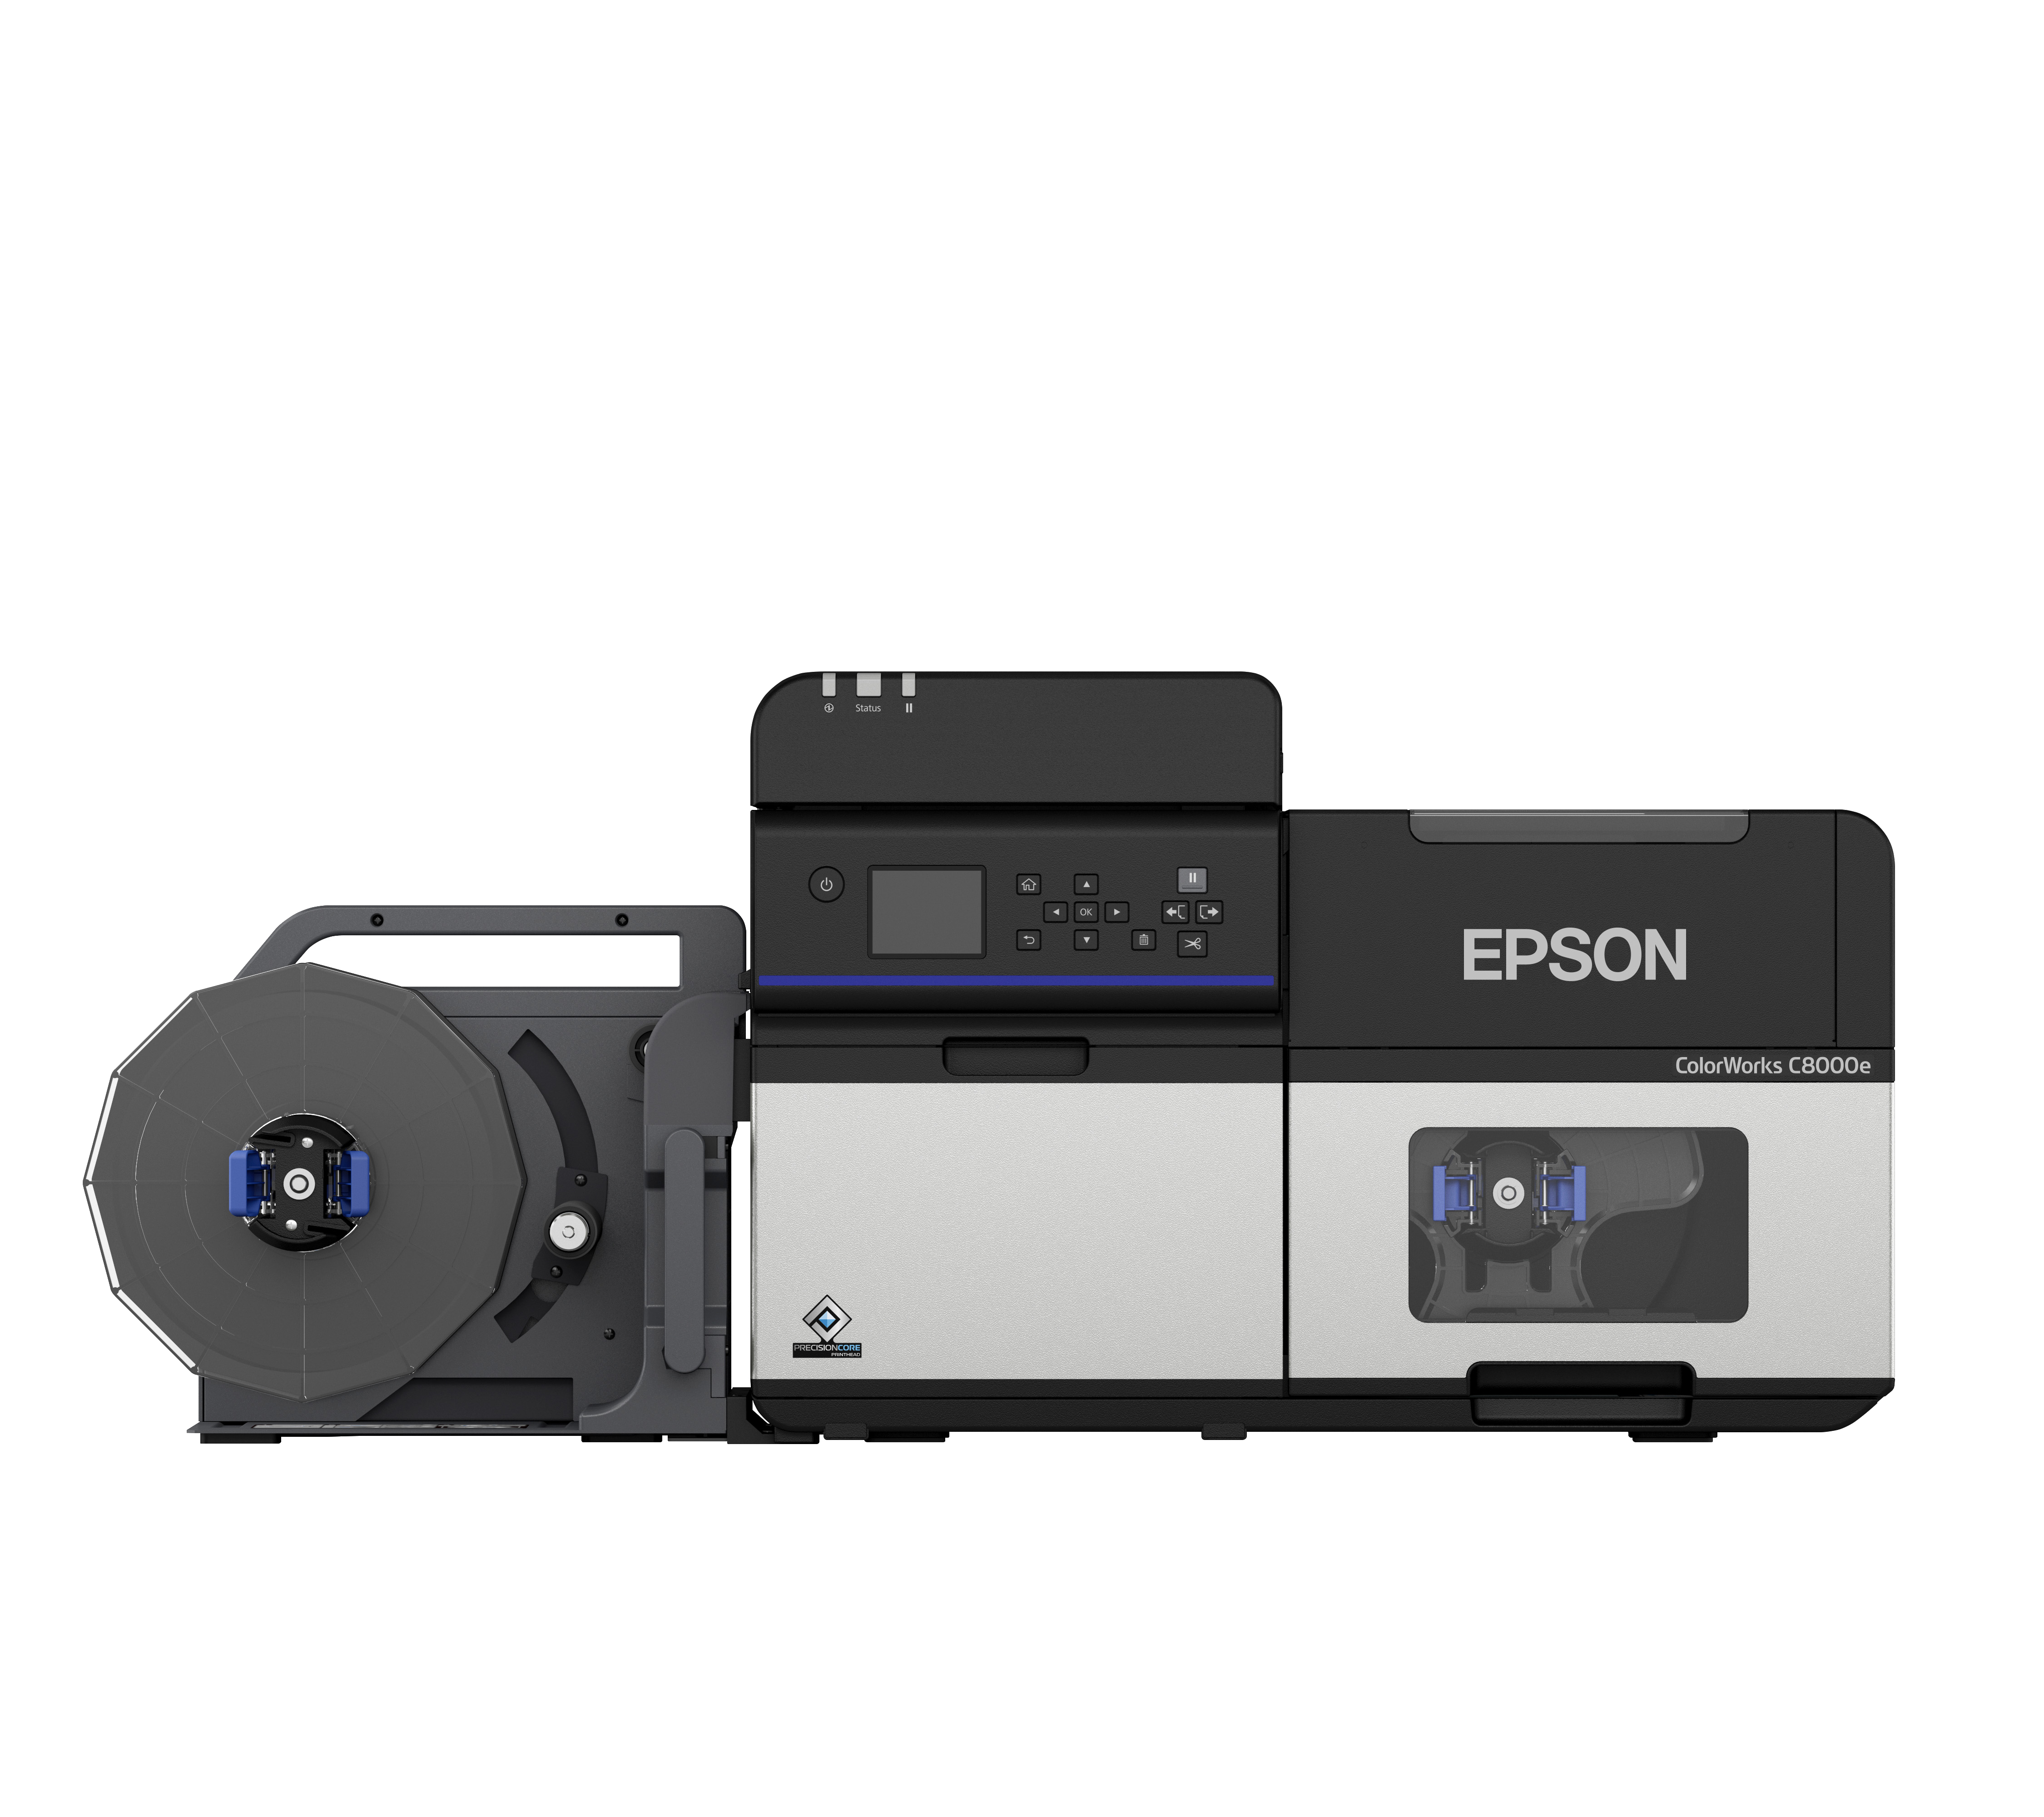 EPSON ColorWorks C8000e